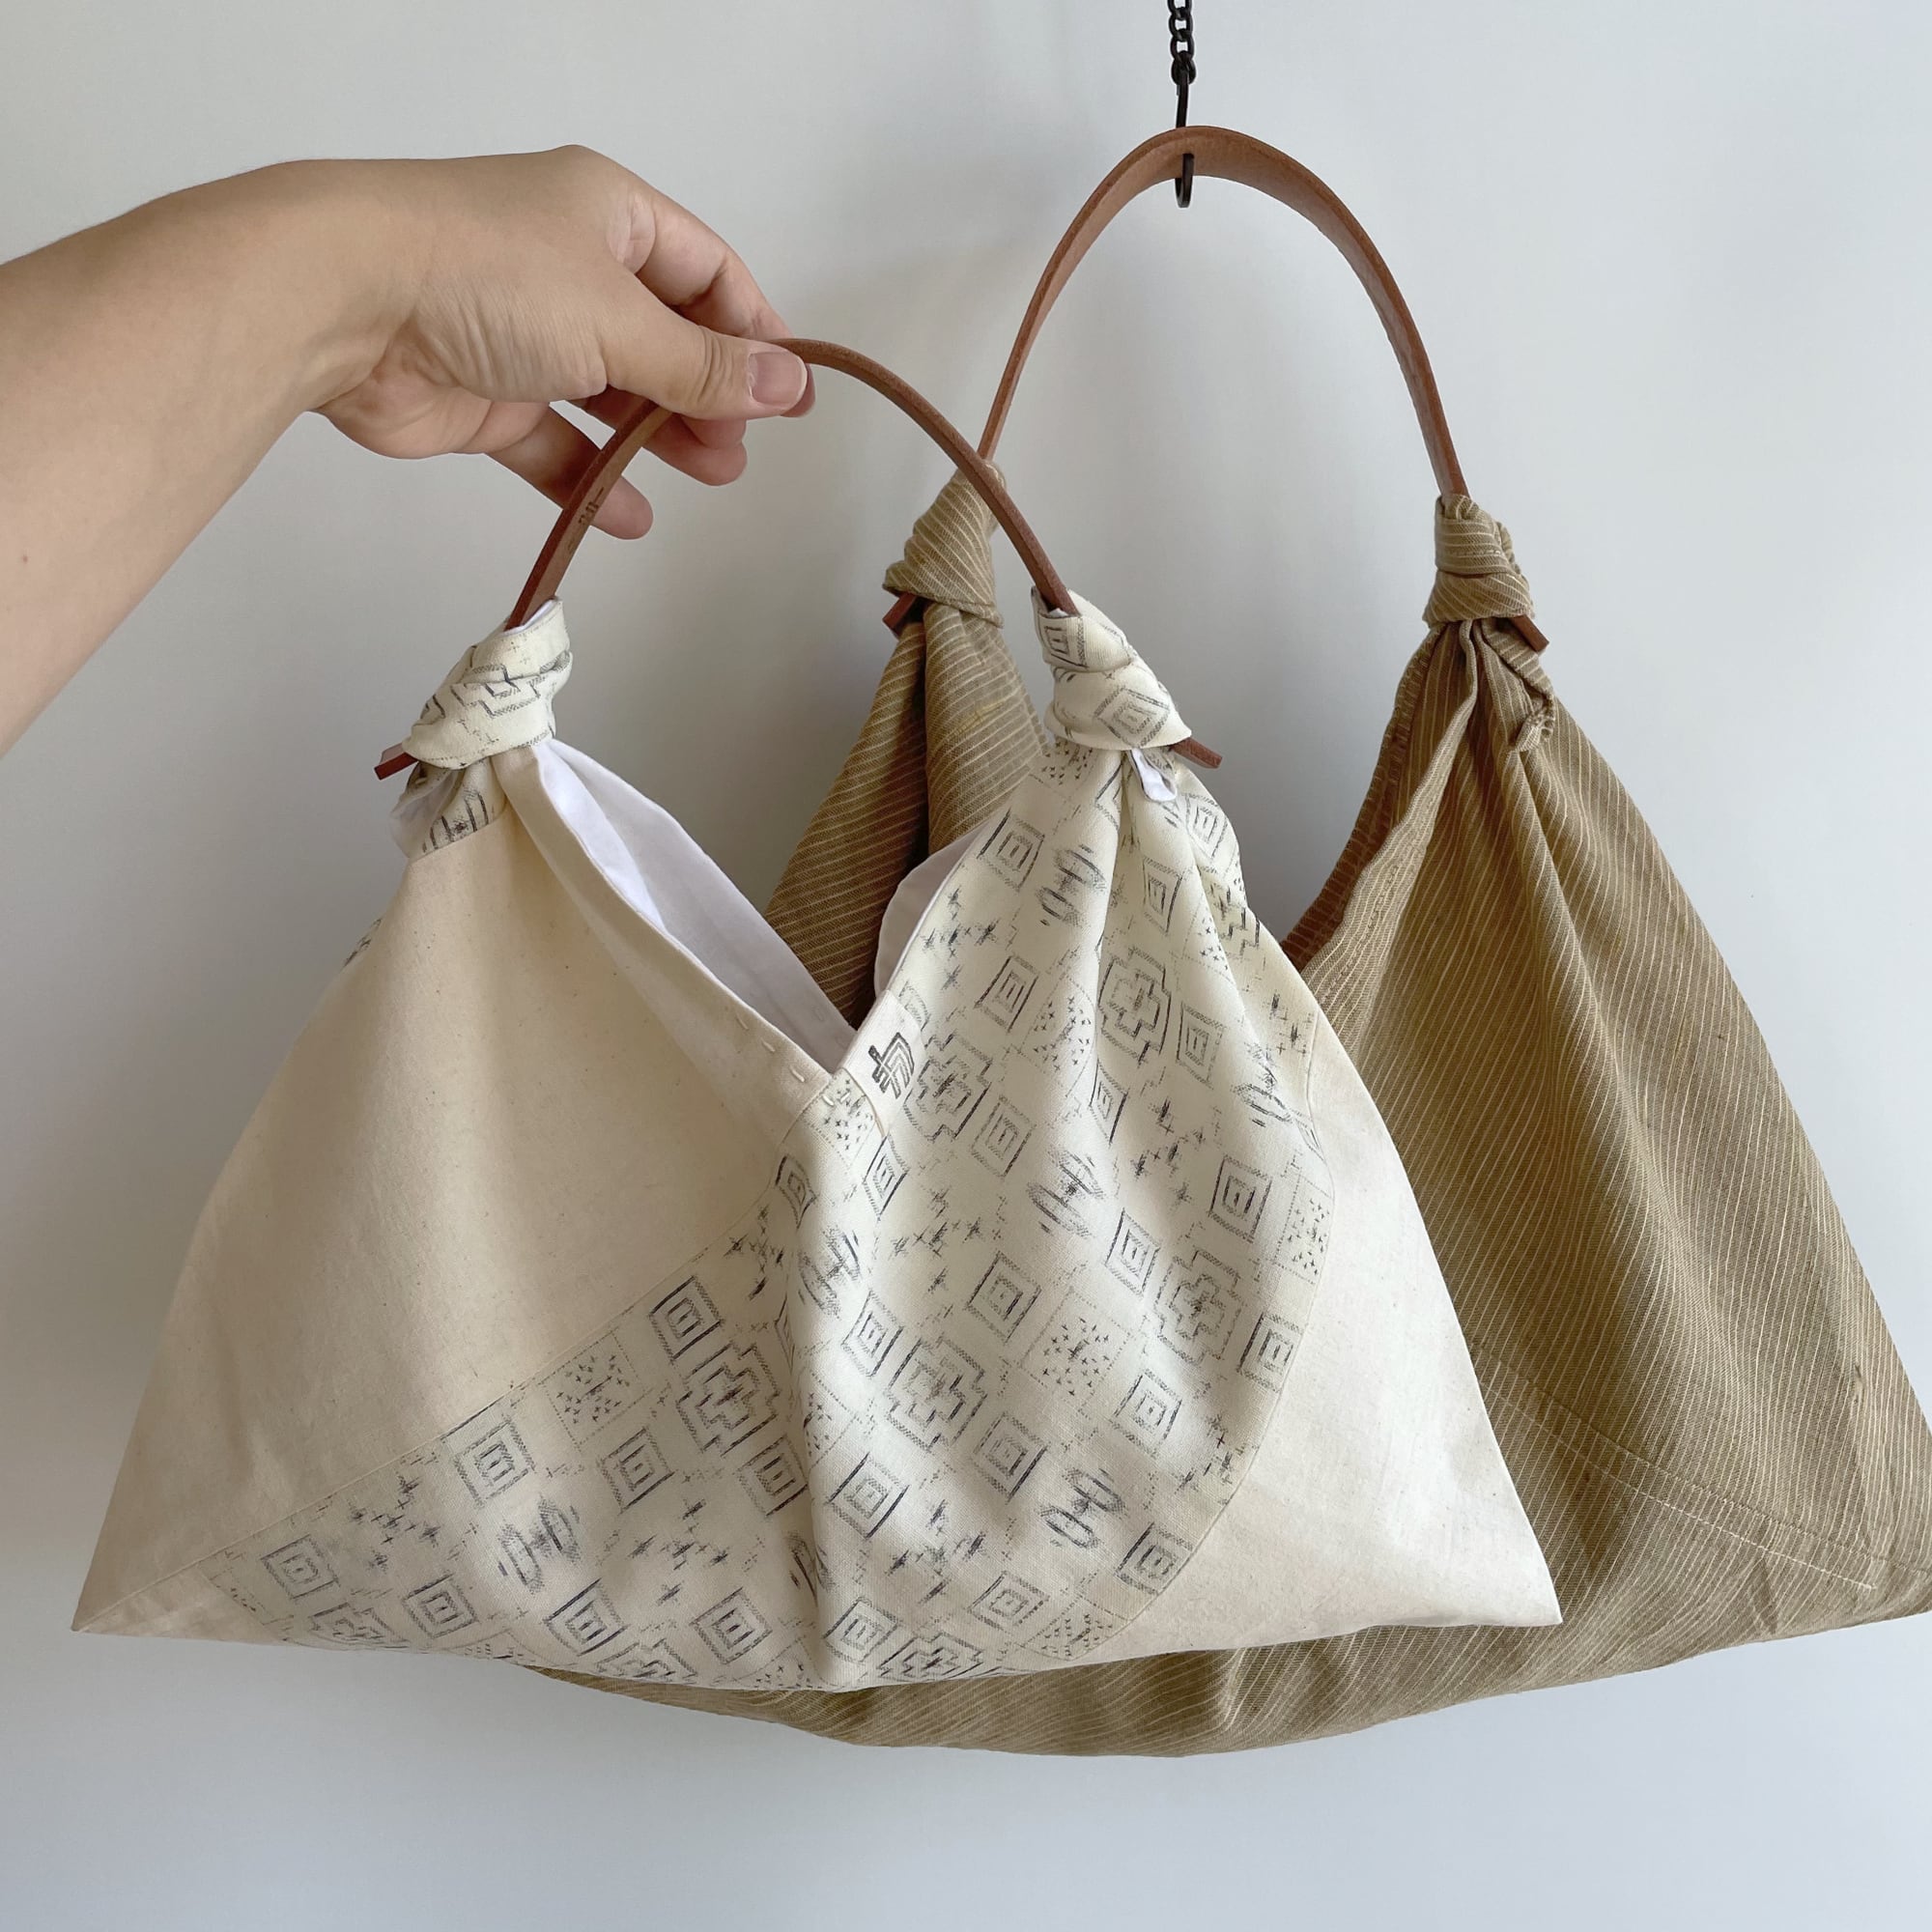 【1点もの Unique item】あずま袋 裏地付き ハンドバッグサイズ, AZUMA bag with lining Handbag-size,  -デッドストック帆布 & ウール着物地 オフホワイトに絣模様, Dead-stock Canvas & Wook KIMONO fabric,